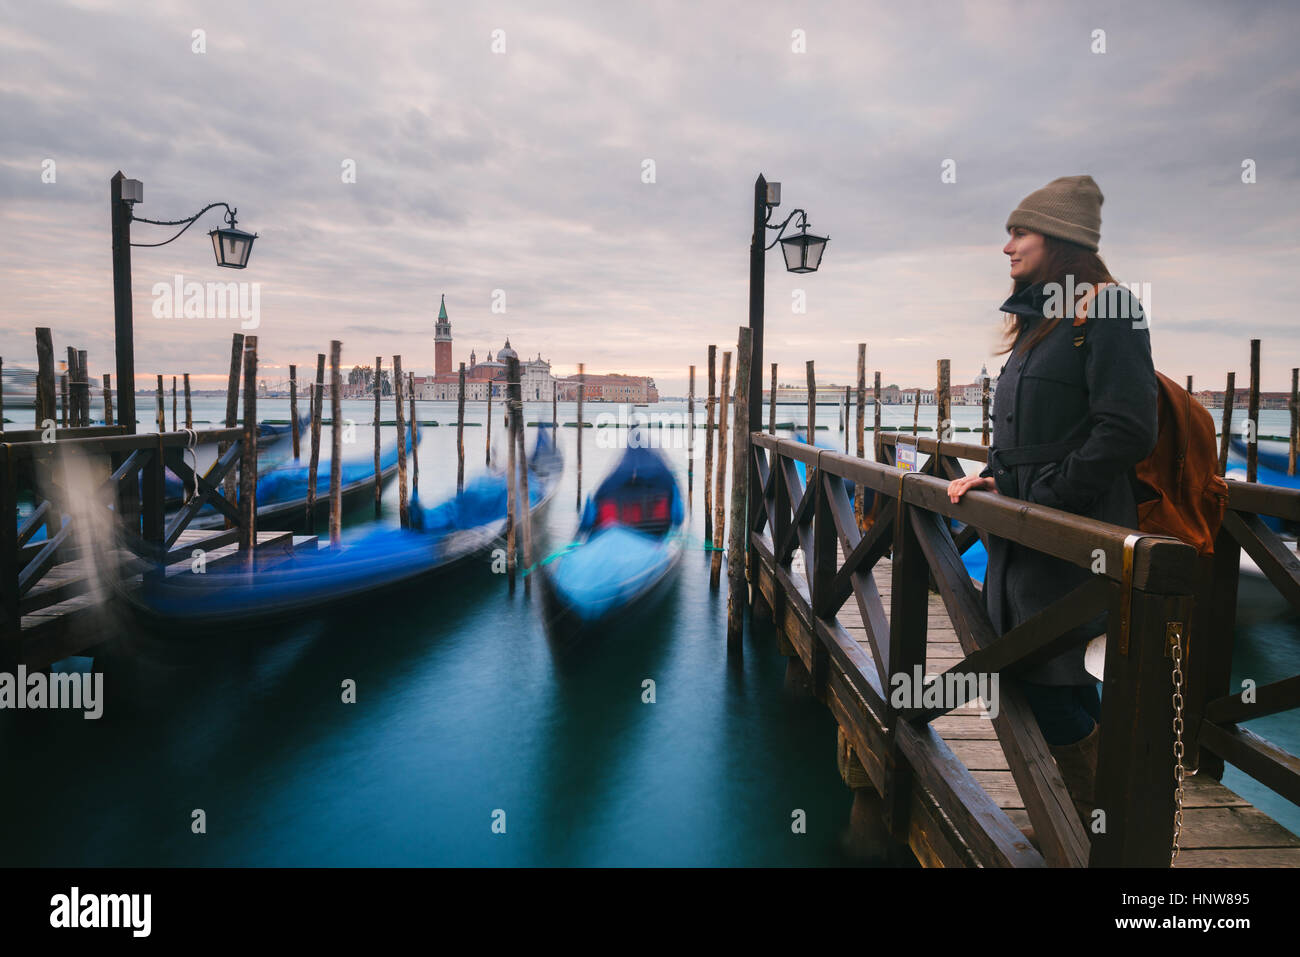 Woman on pier by gondolas in Grand Canal, San Giorgio Maggiore Island in background, Venice, Italy Stock Photo